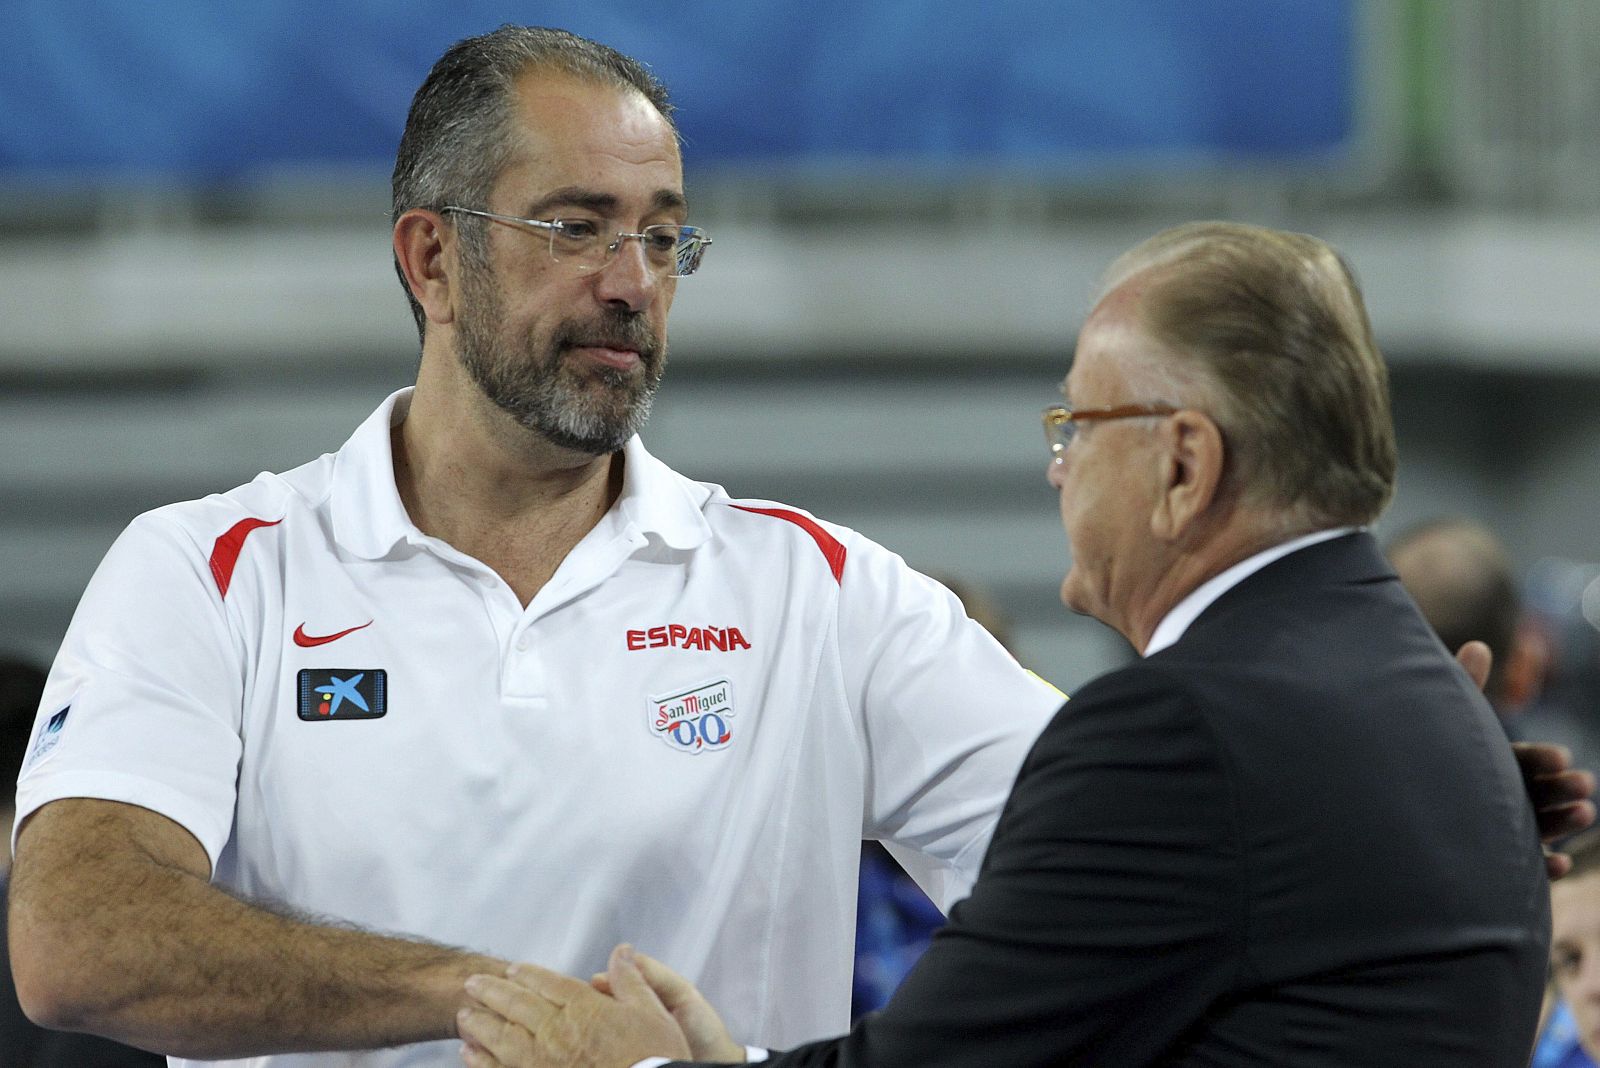 El entrenador de la selección española de baloncesto, Juan Antonio Orenga, saluda a su colega serbio Dusan Ivkovic